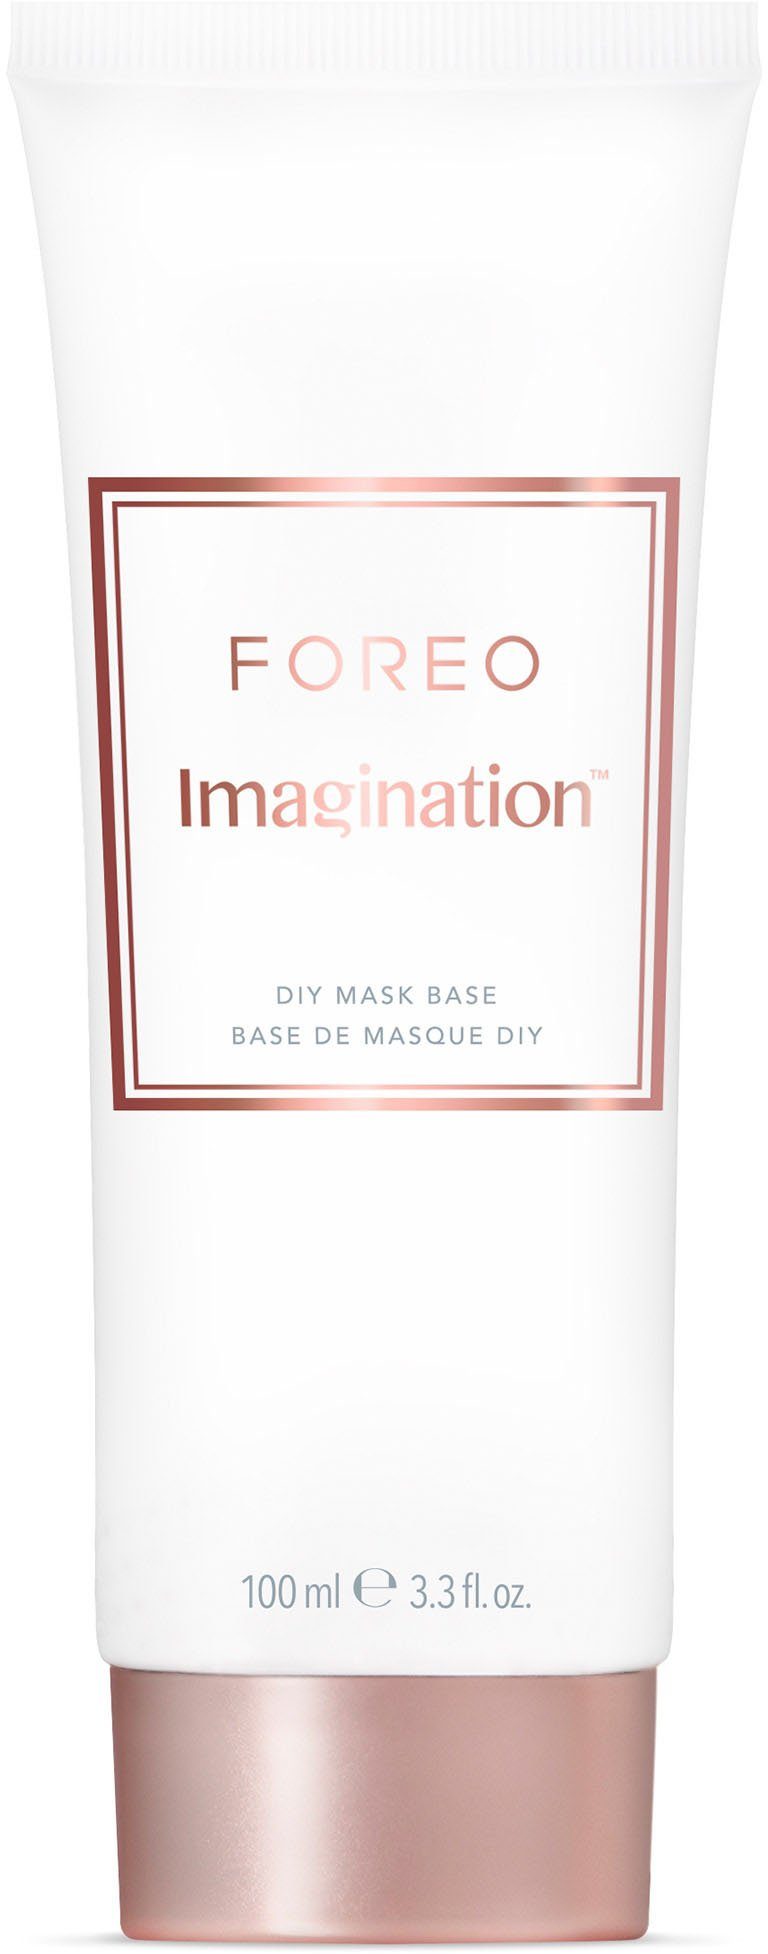 Imagination Gesichtsmaske DIY Base Mask 100ml FOREO